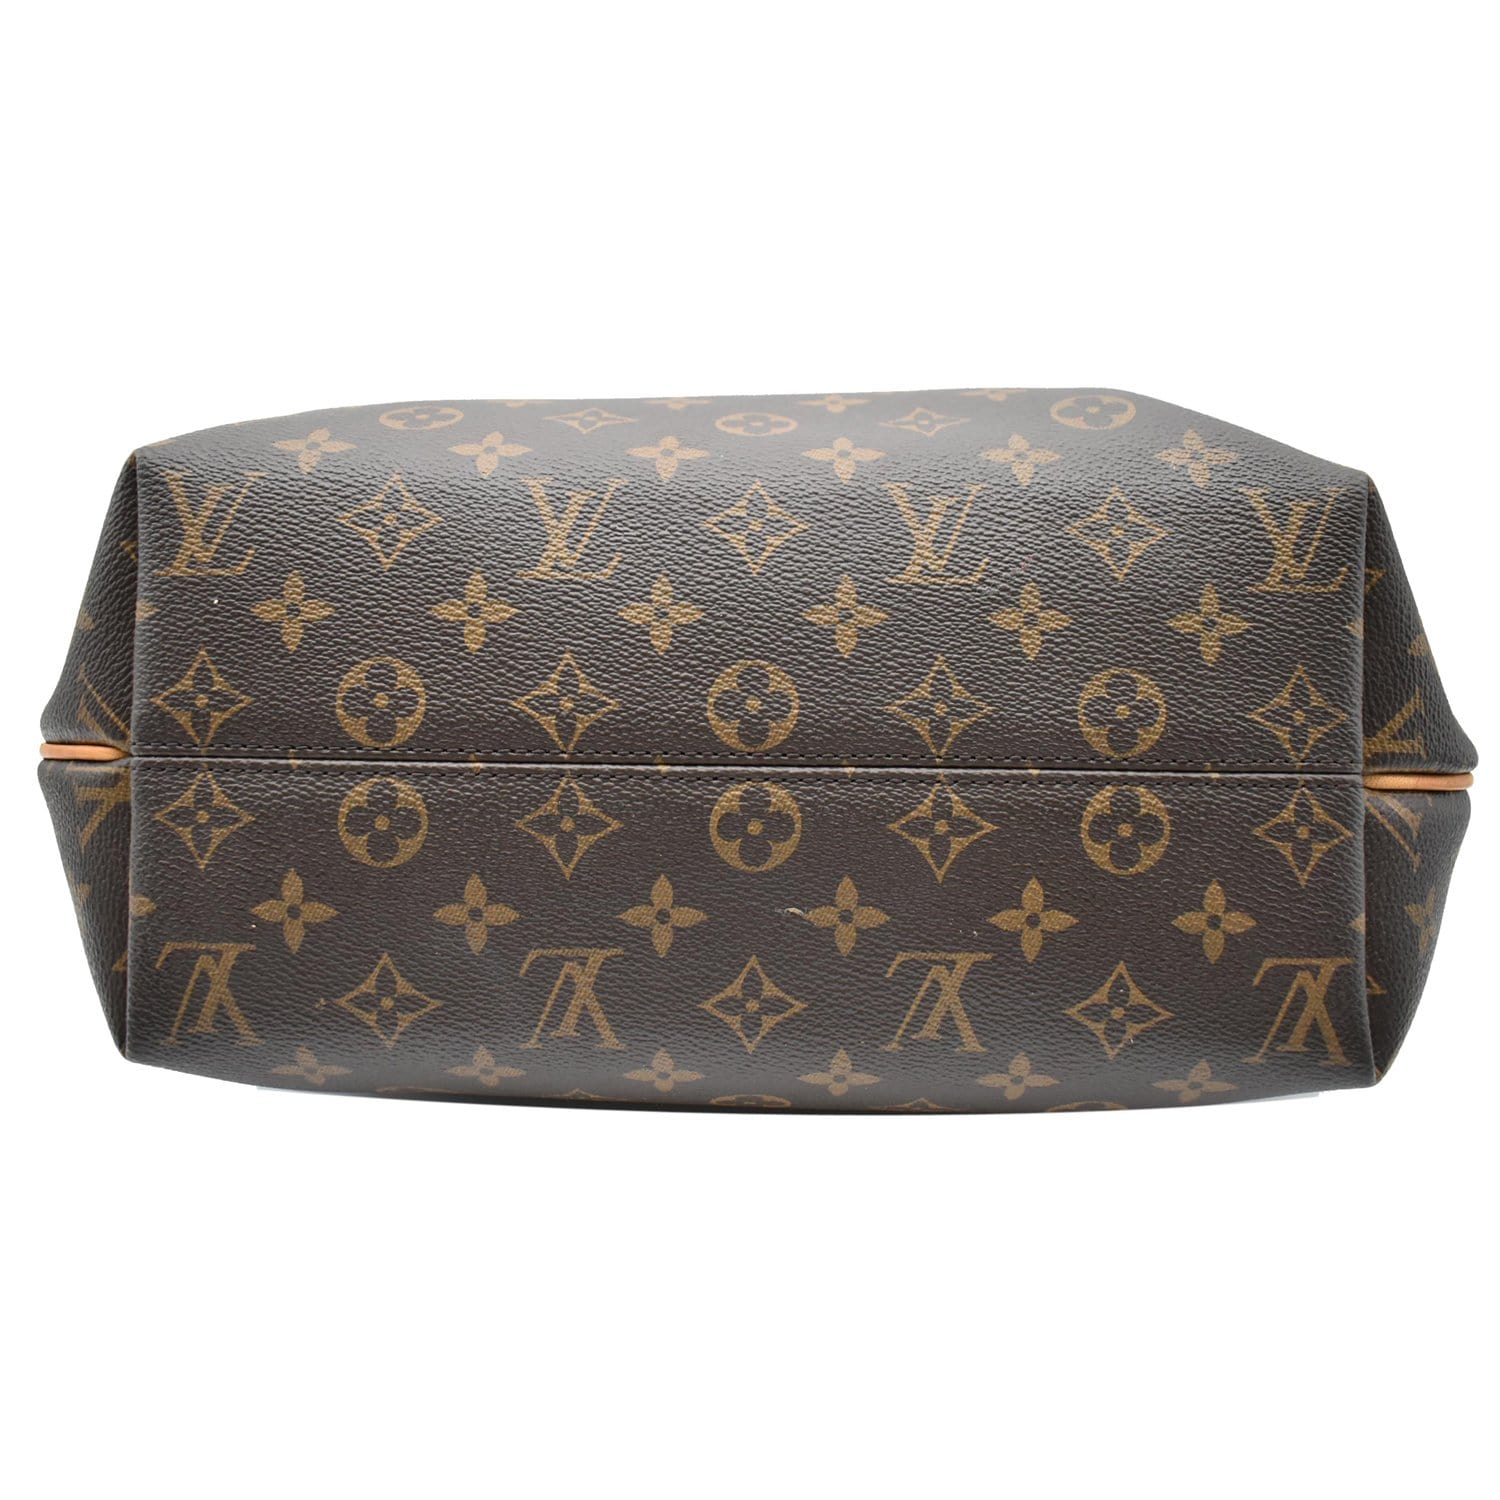 Louis Vuitton Turenne MM Monogram Canvas Shoulder Bag in Excellent Condition